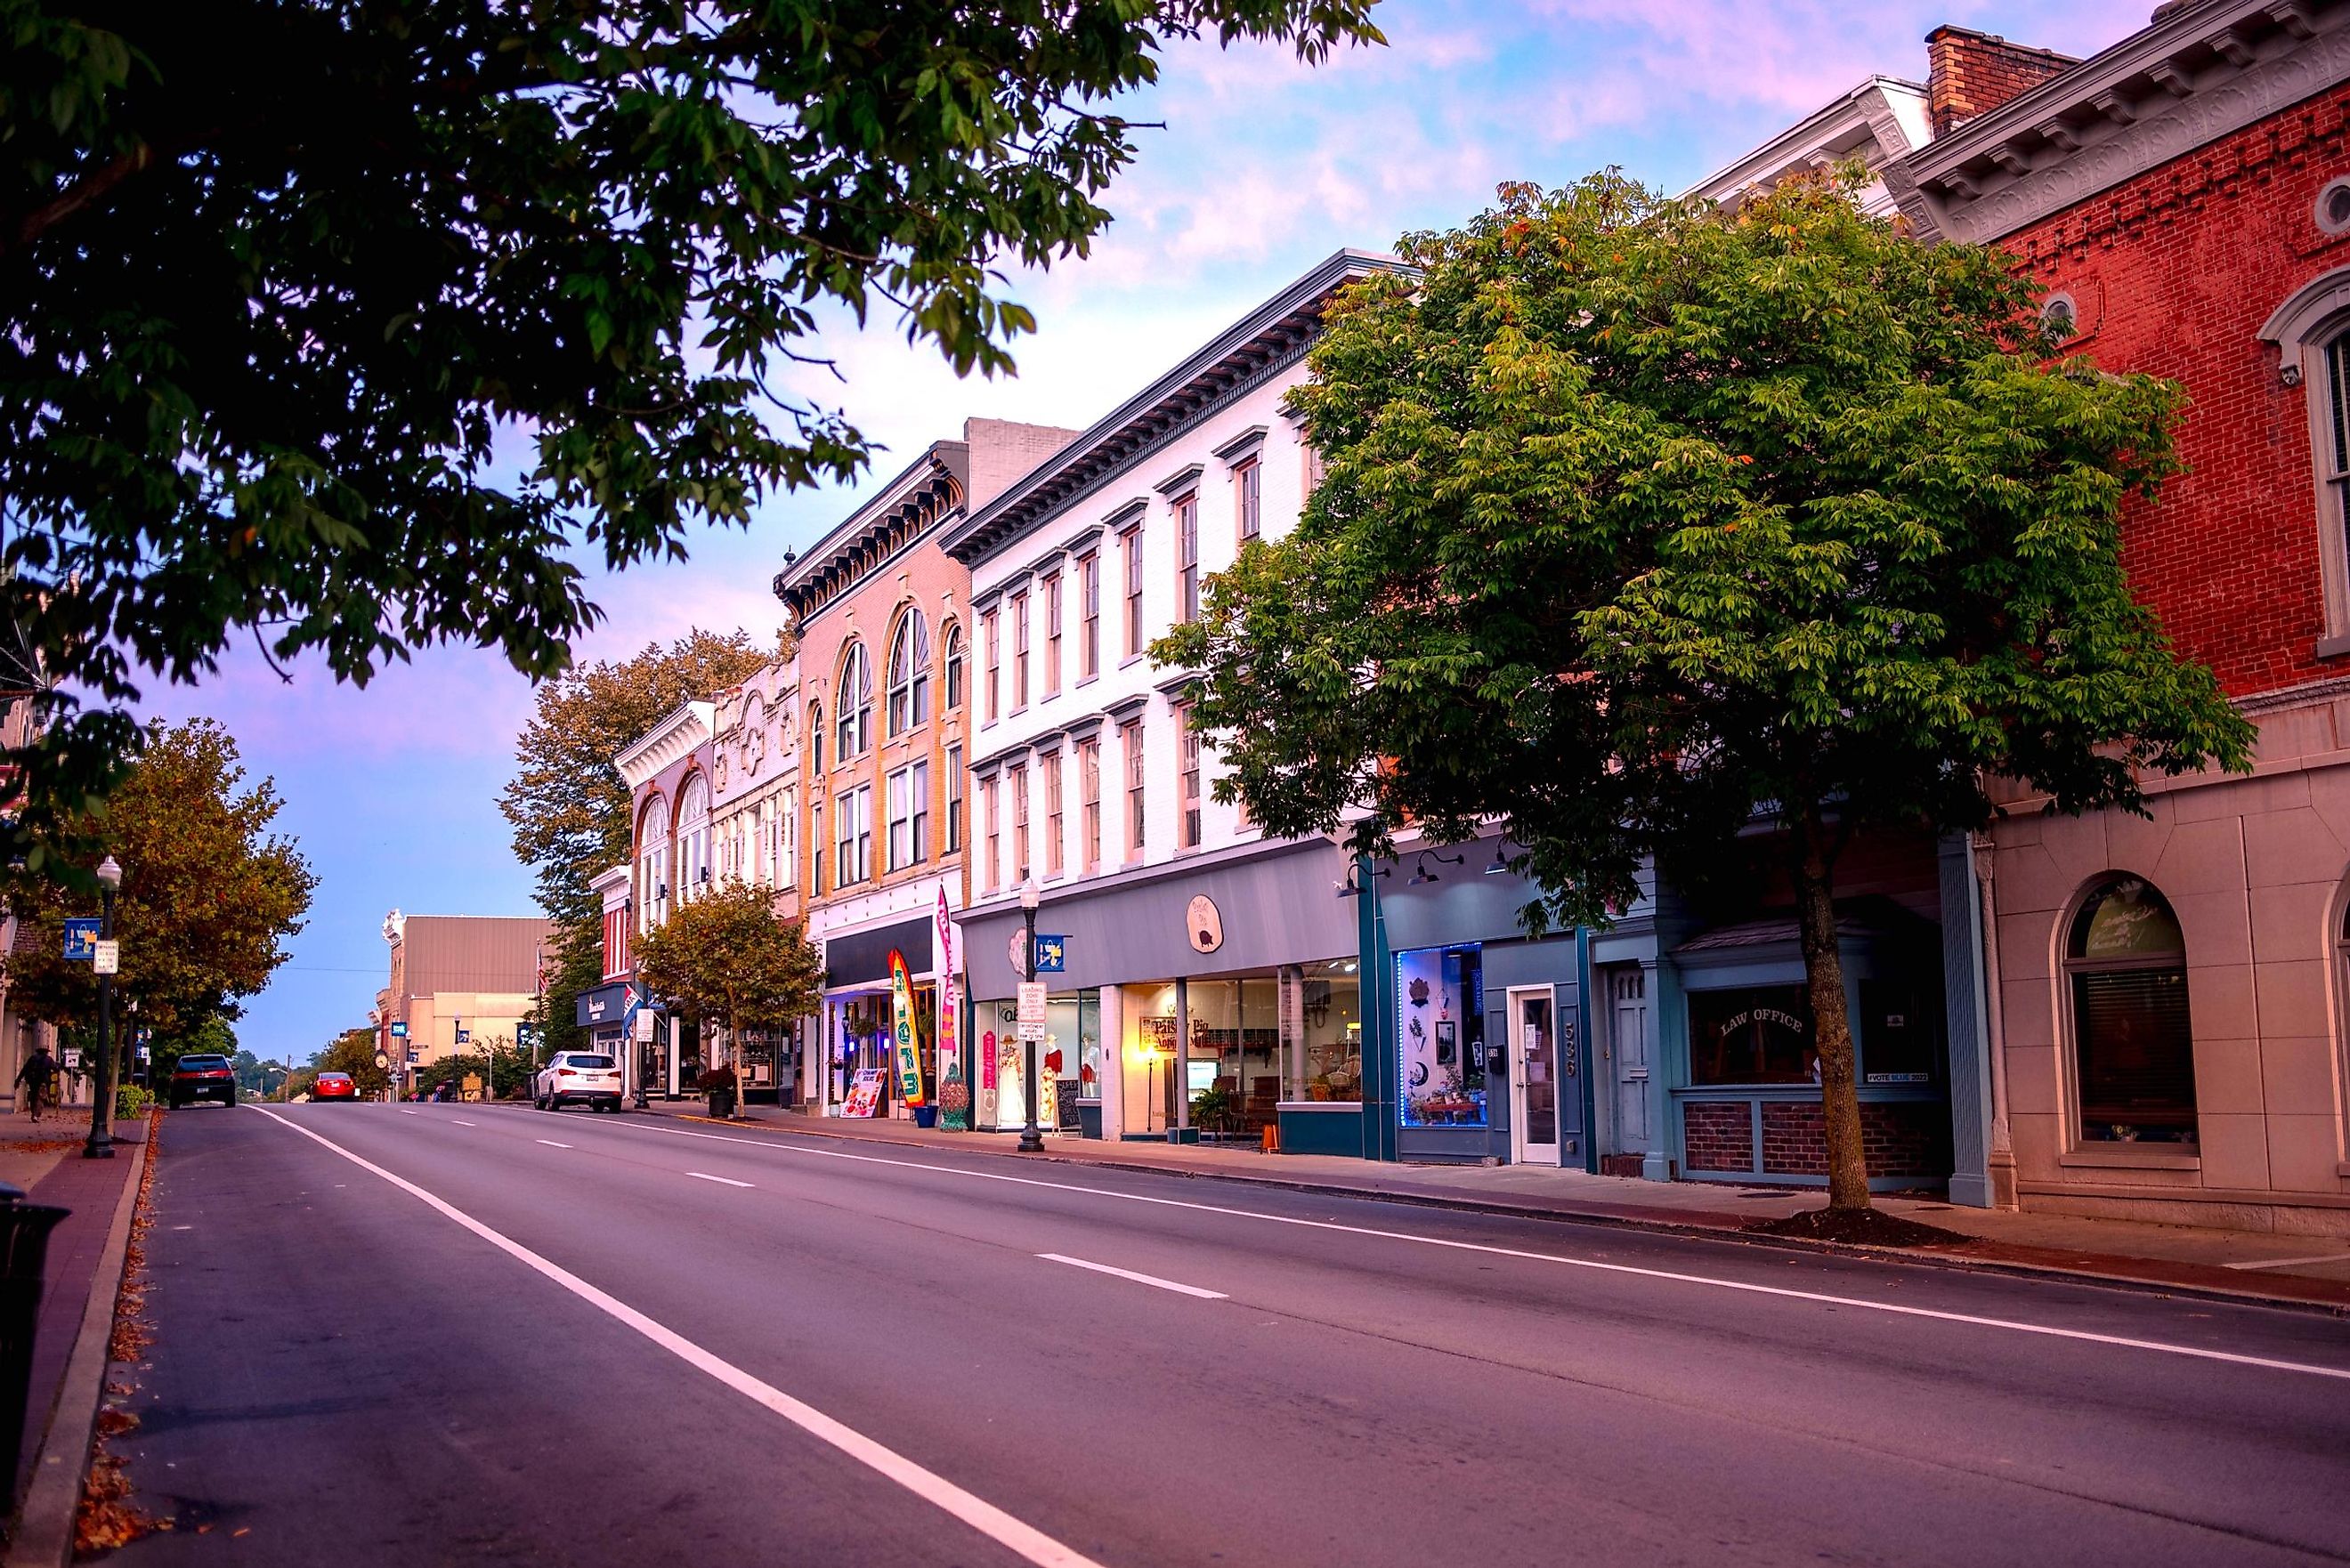 Main Street in Shelbyville, Kentucky. Editorial credit: Blue Meta / Shutterstock.com